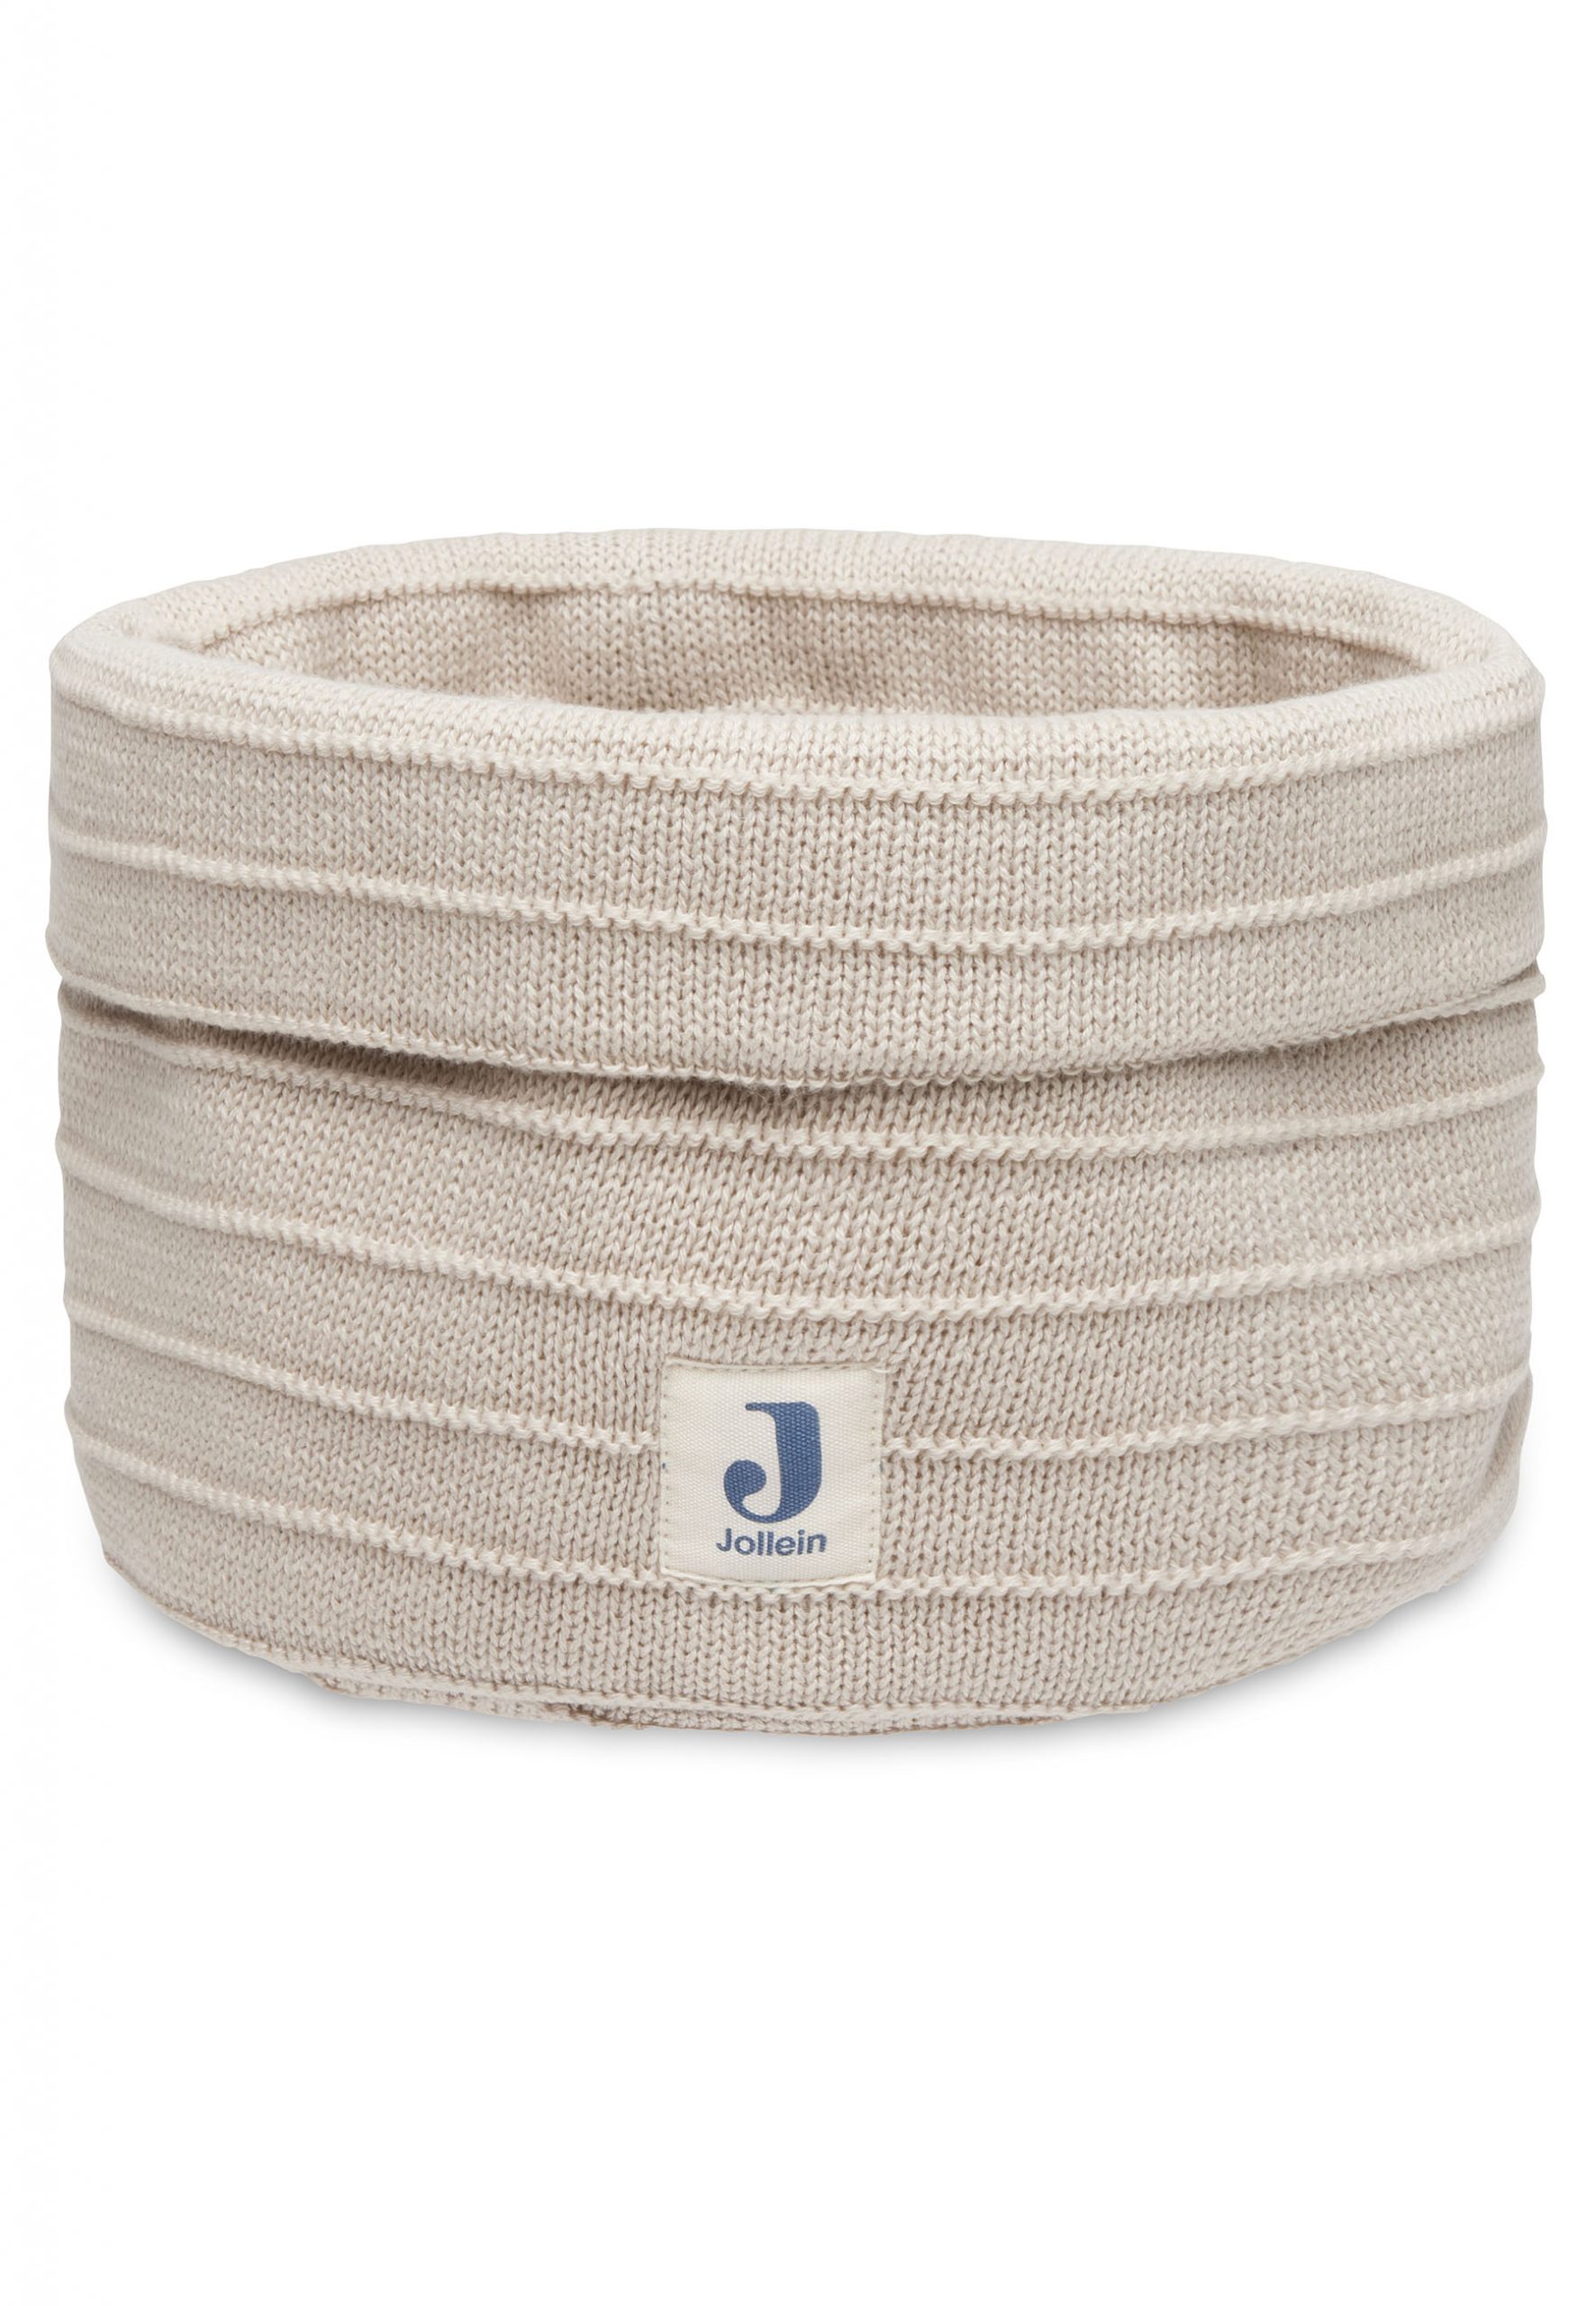 JOLLEIN – Panier de rangement Pure Knit nougat